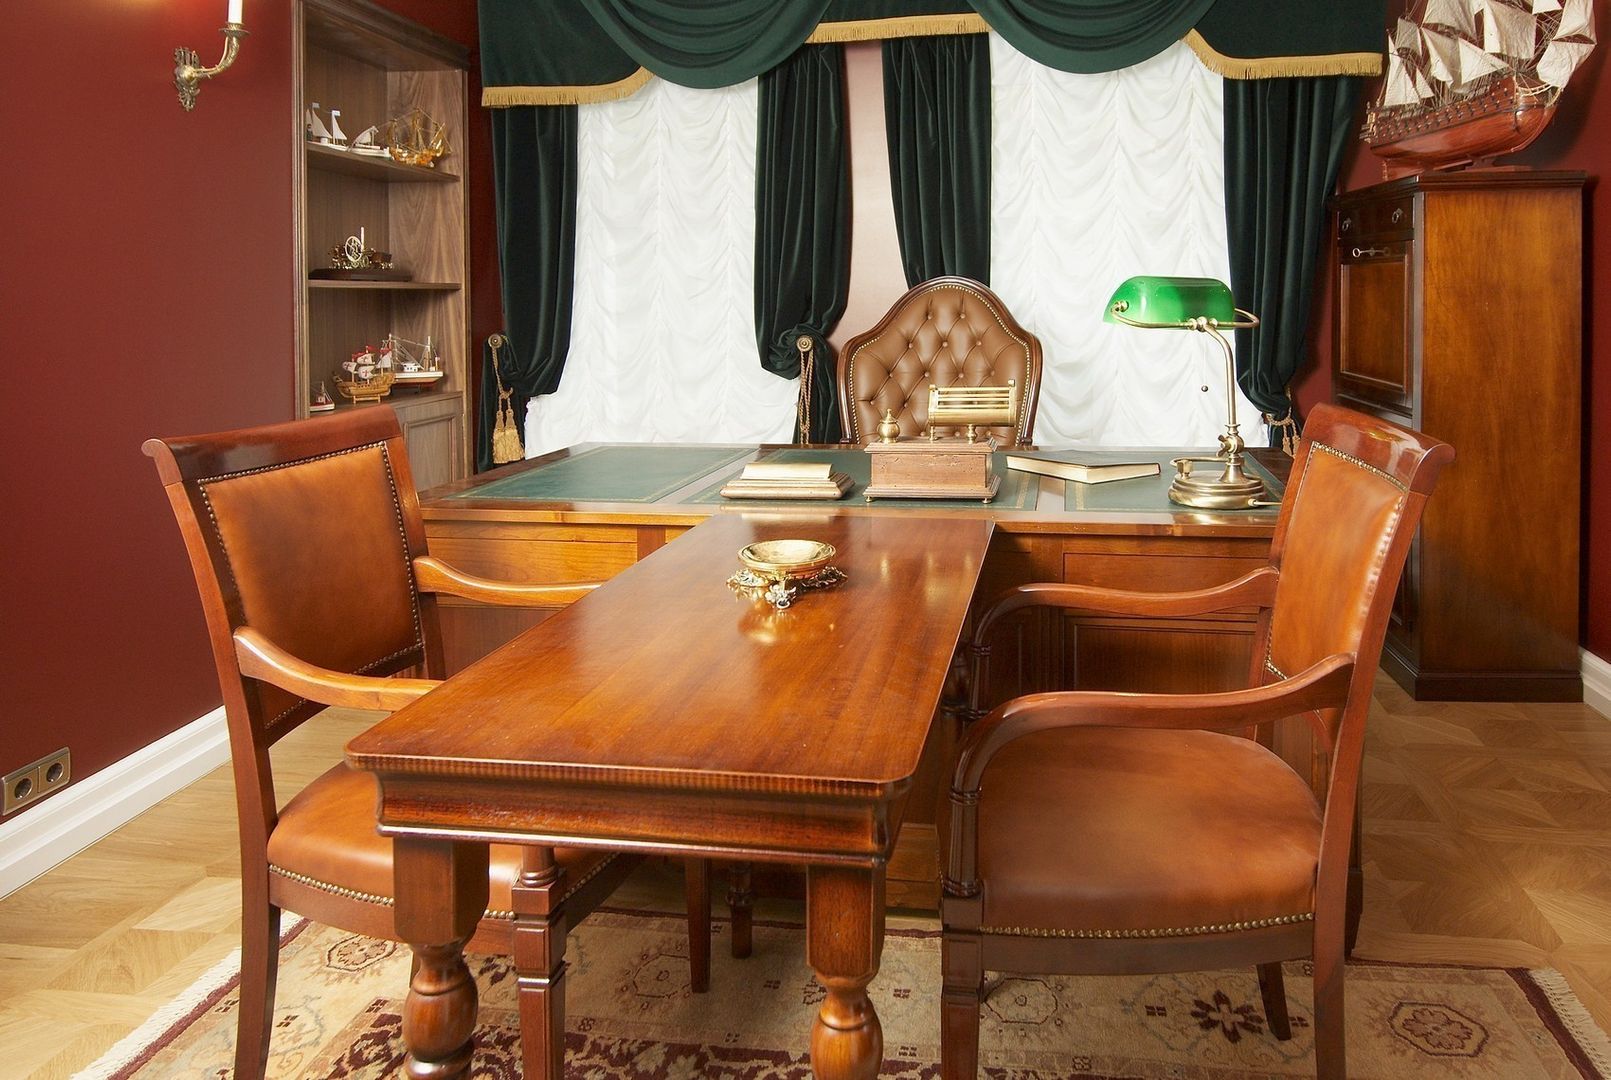 Офис в старинном московском особняке, Irina Tatarnikova Irina Tatarnikova Рабочий кабинет в классическом стиле Письменные столы